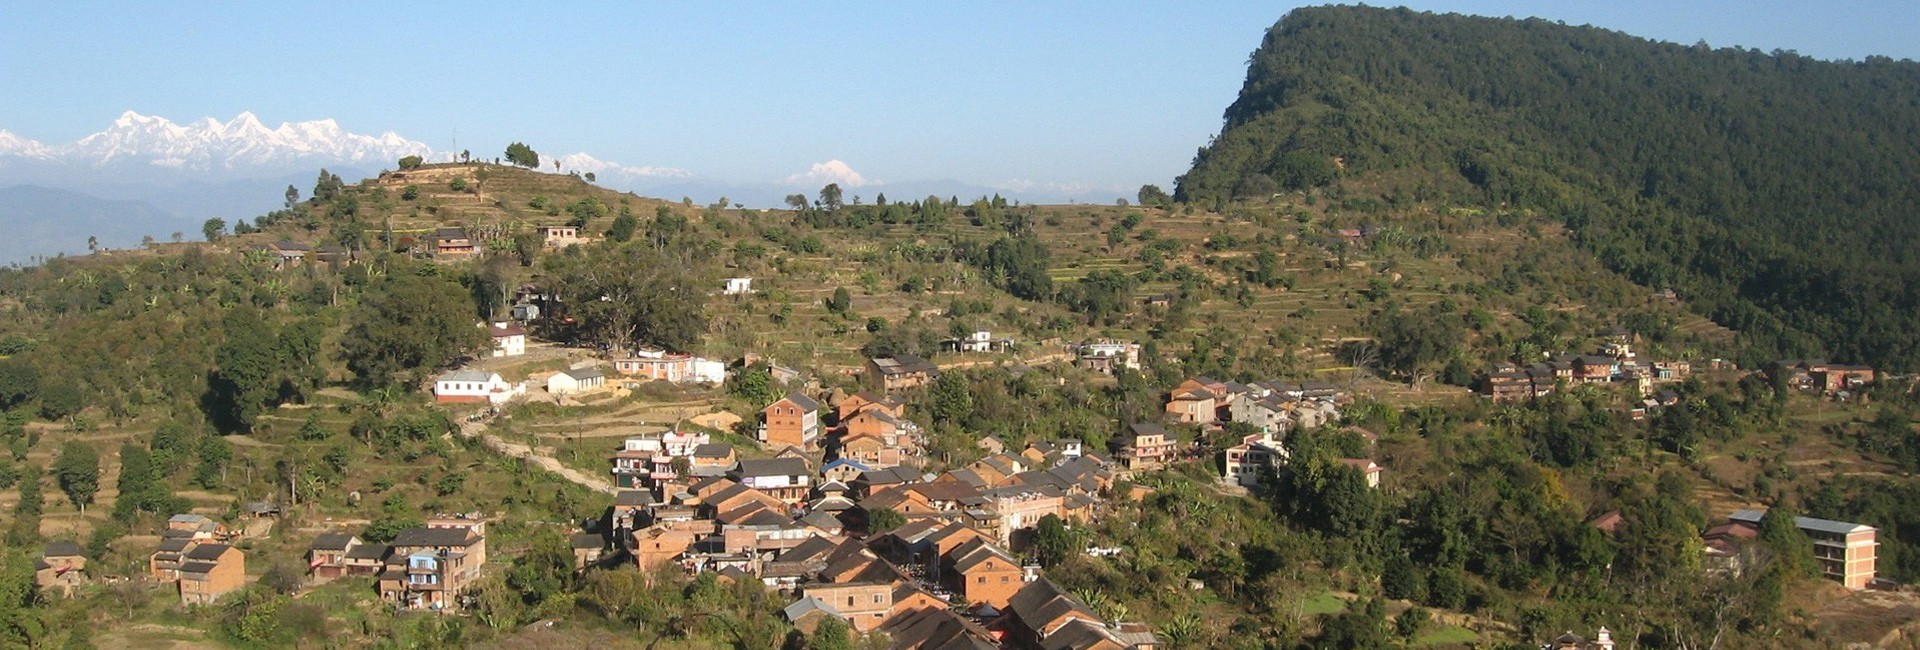 Village tour in Nepal -11 days